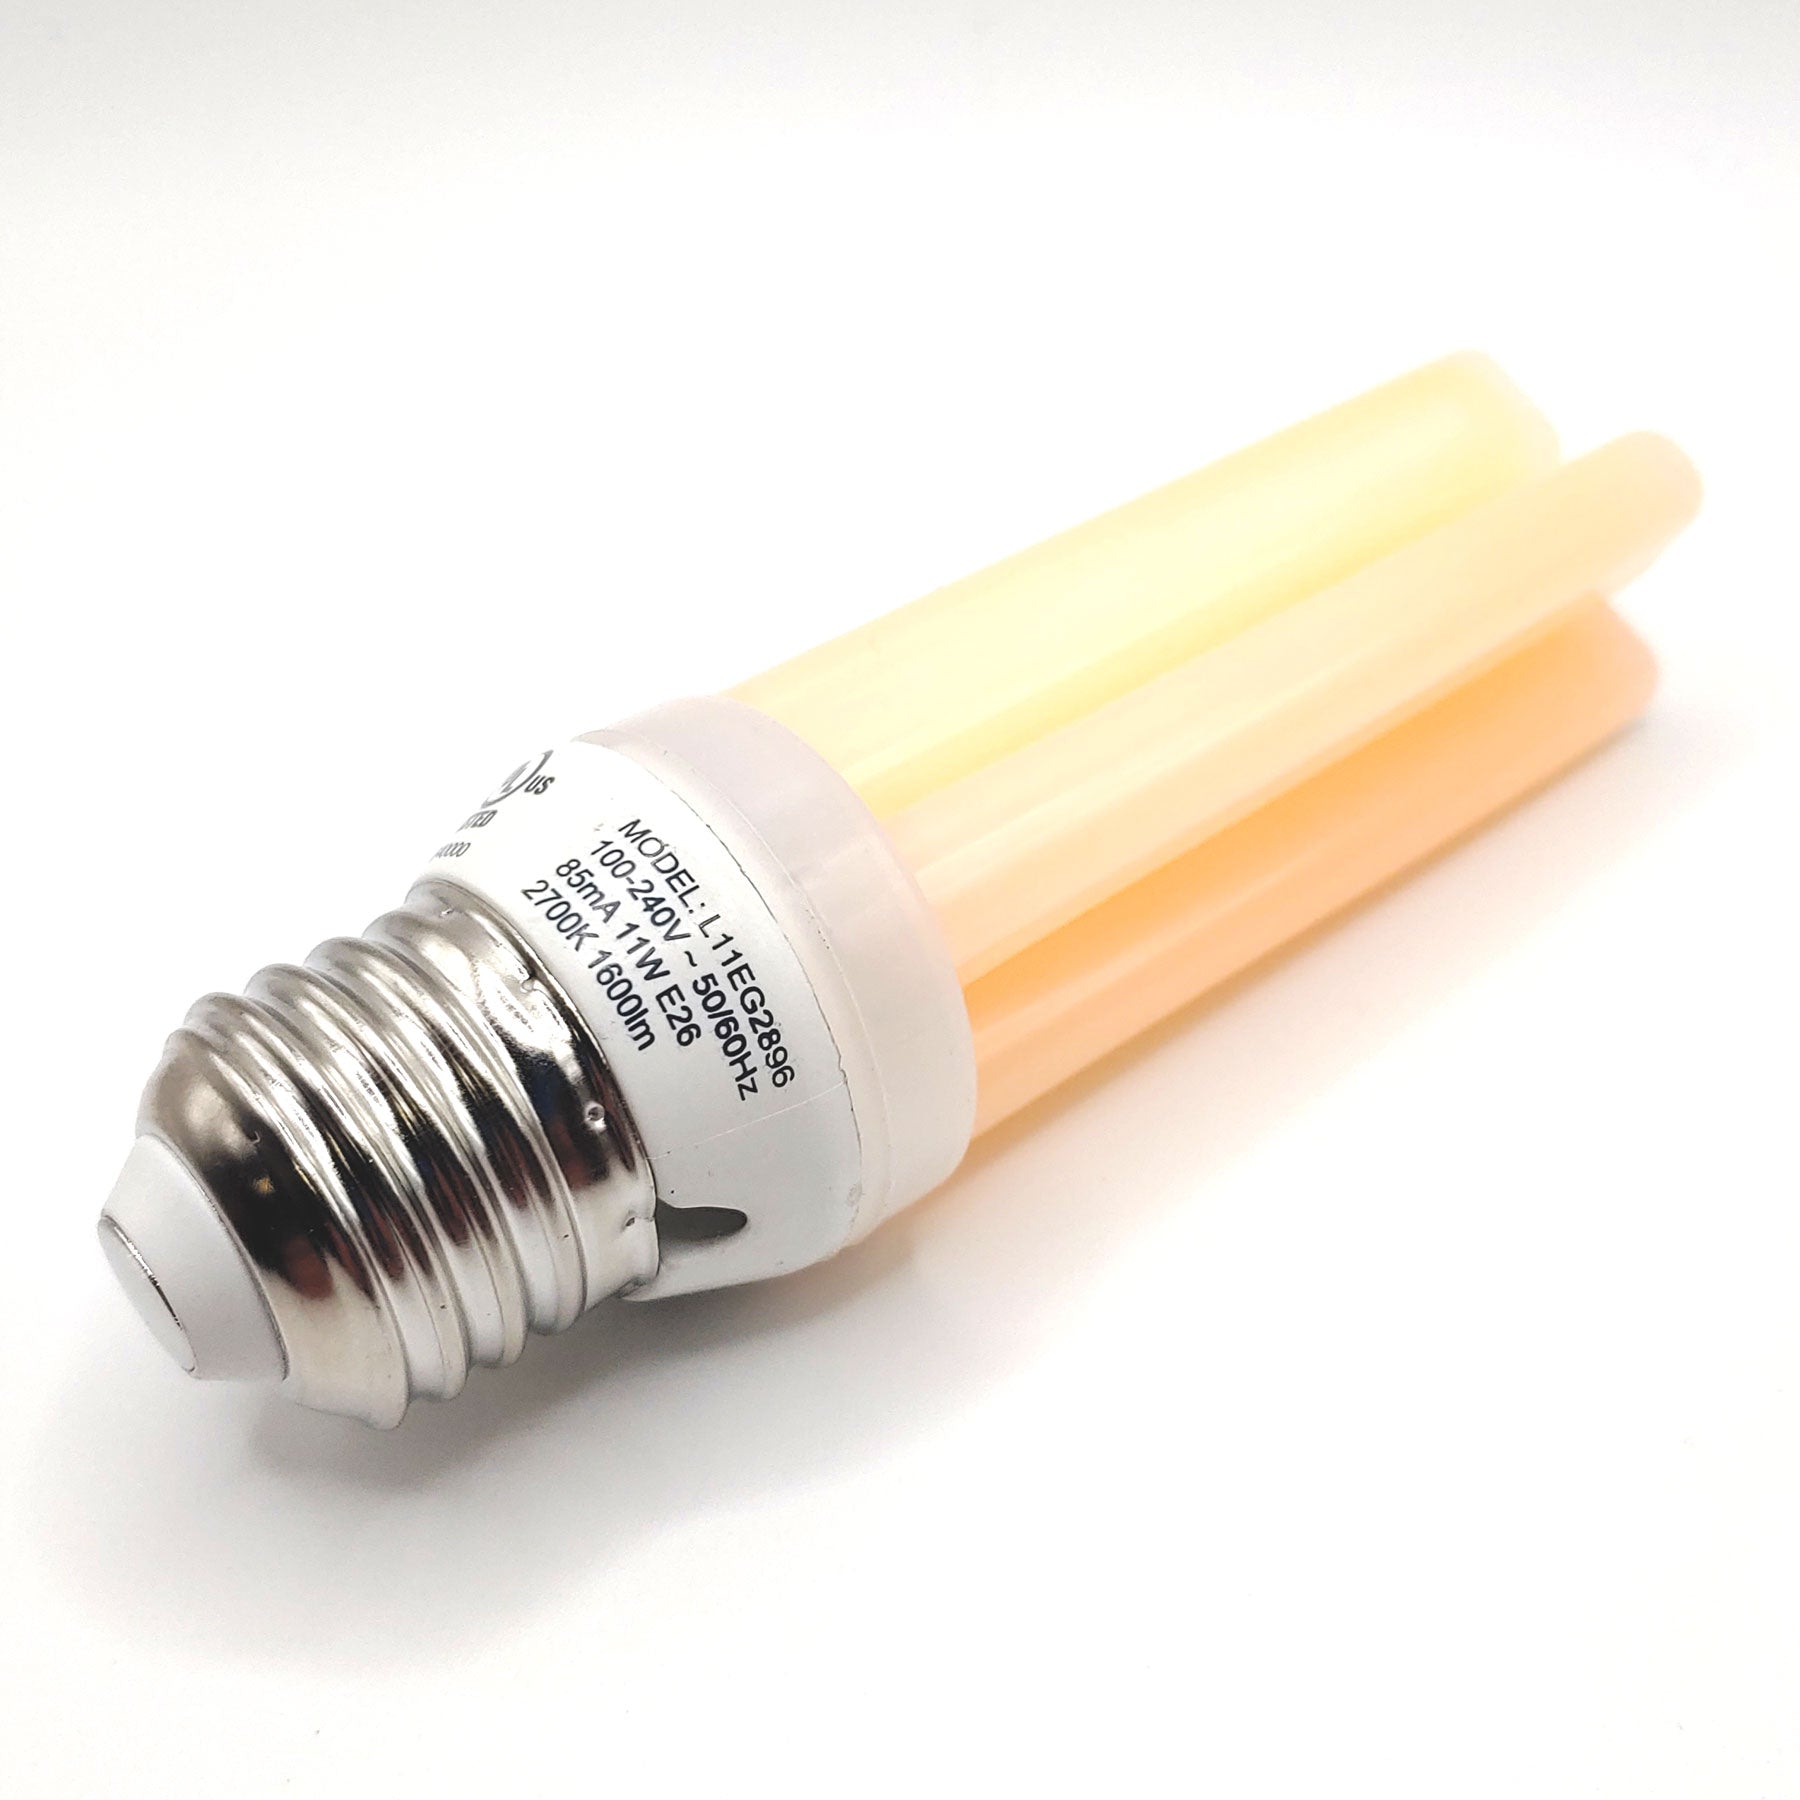 Viristick 100-Watt Equivalent E26 1500 Lumen LED Light Bulb